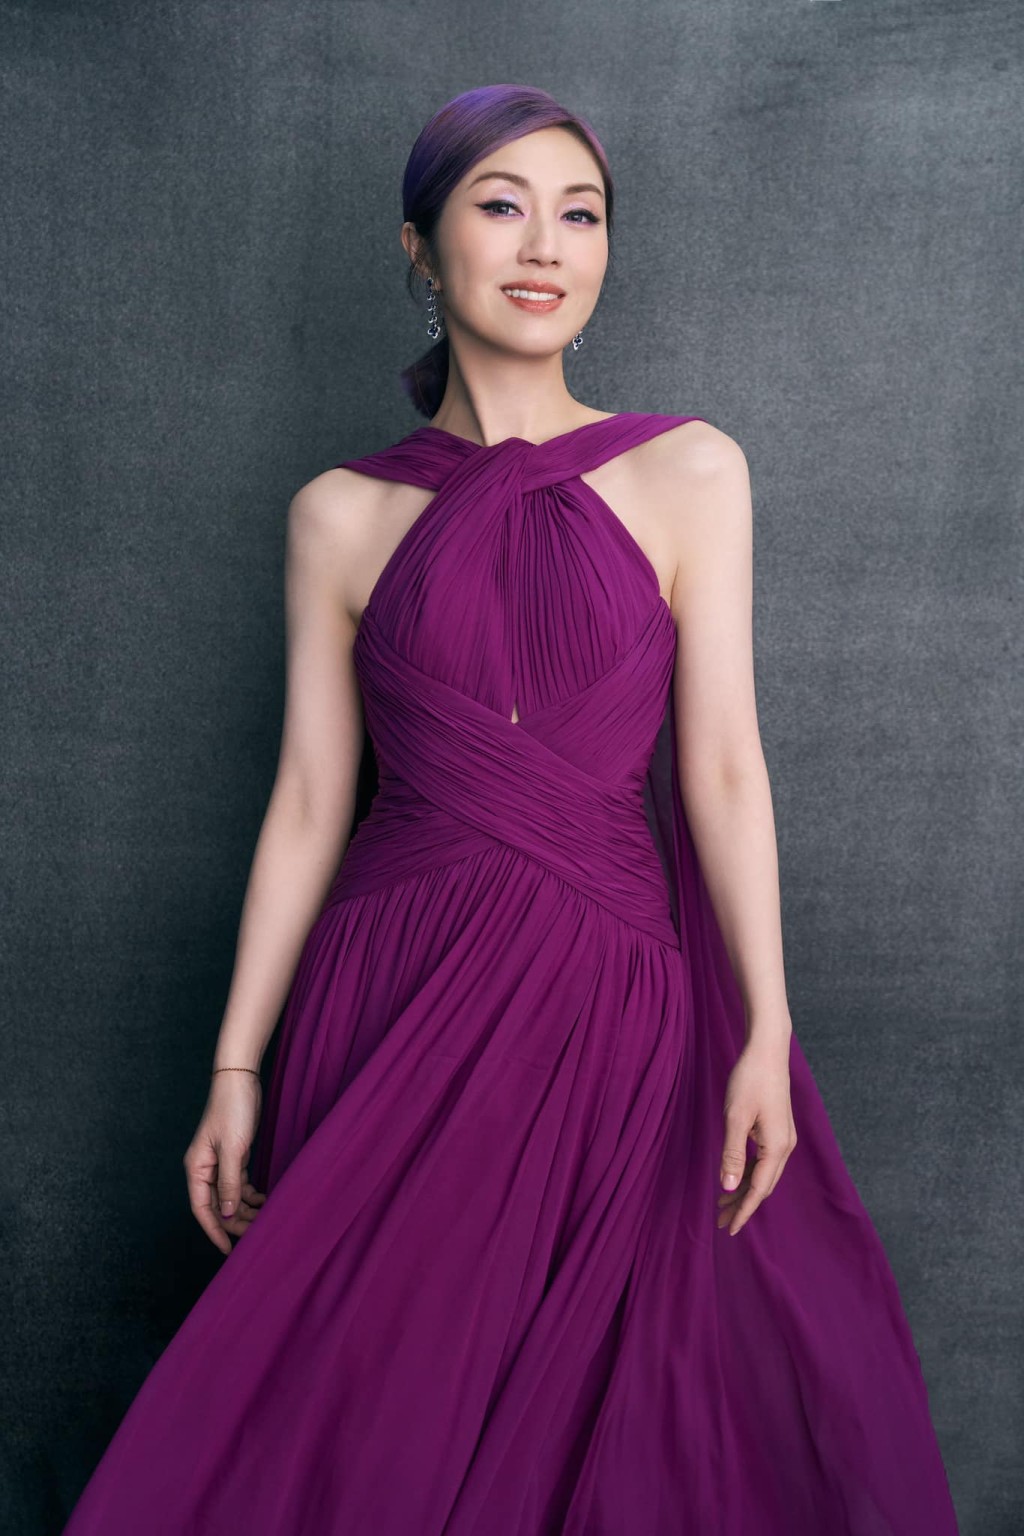 楊千嬅一直都鍾情紫色，其紫色髮形更是她多年來的標誌。